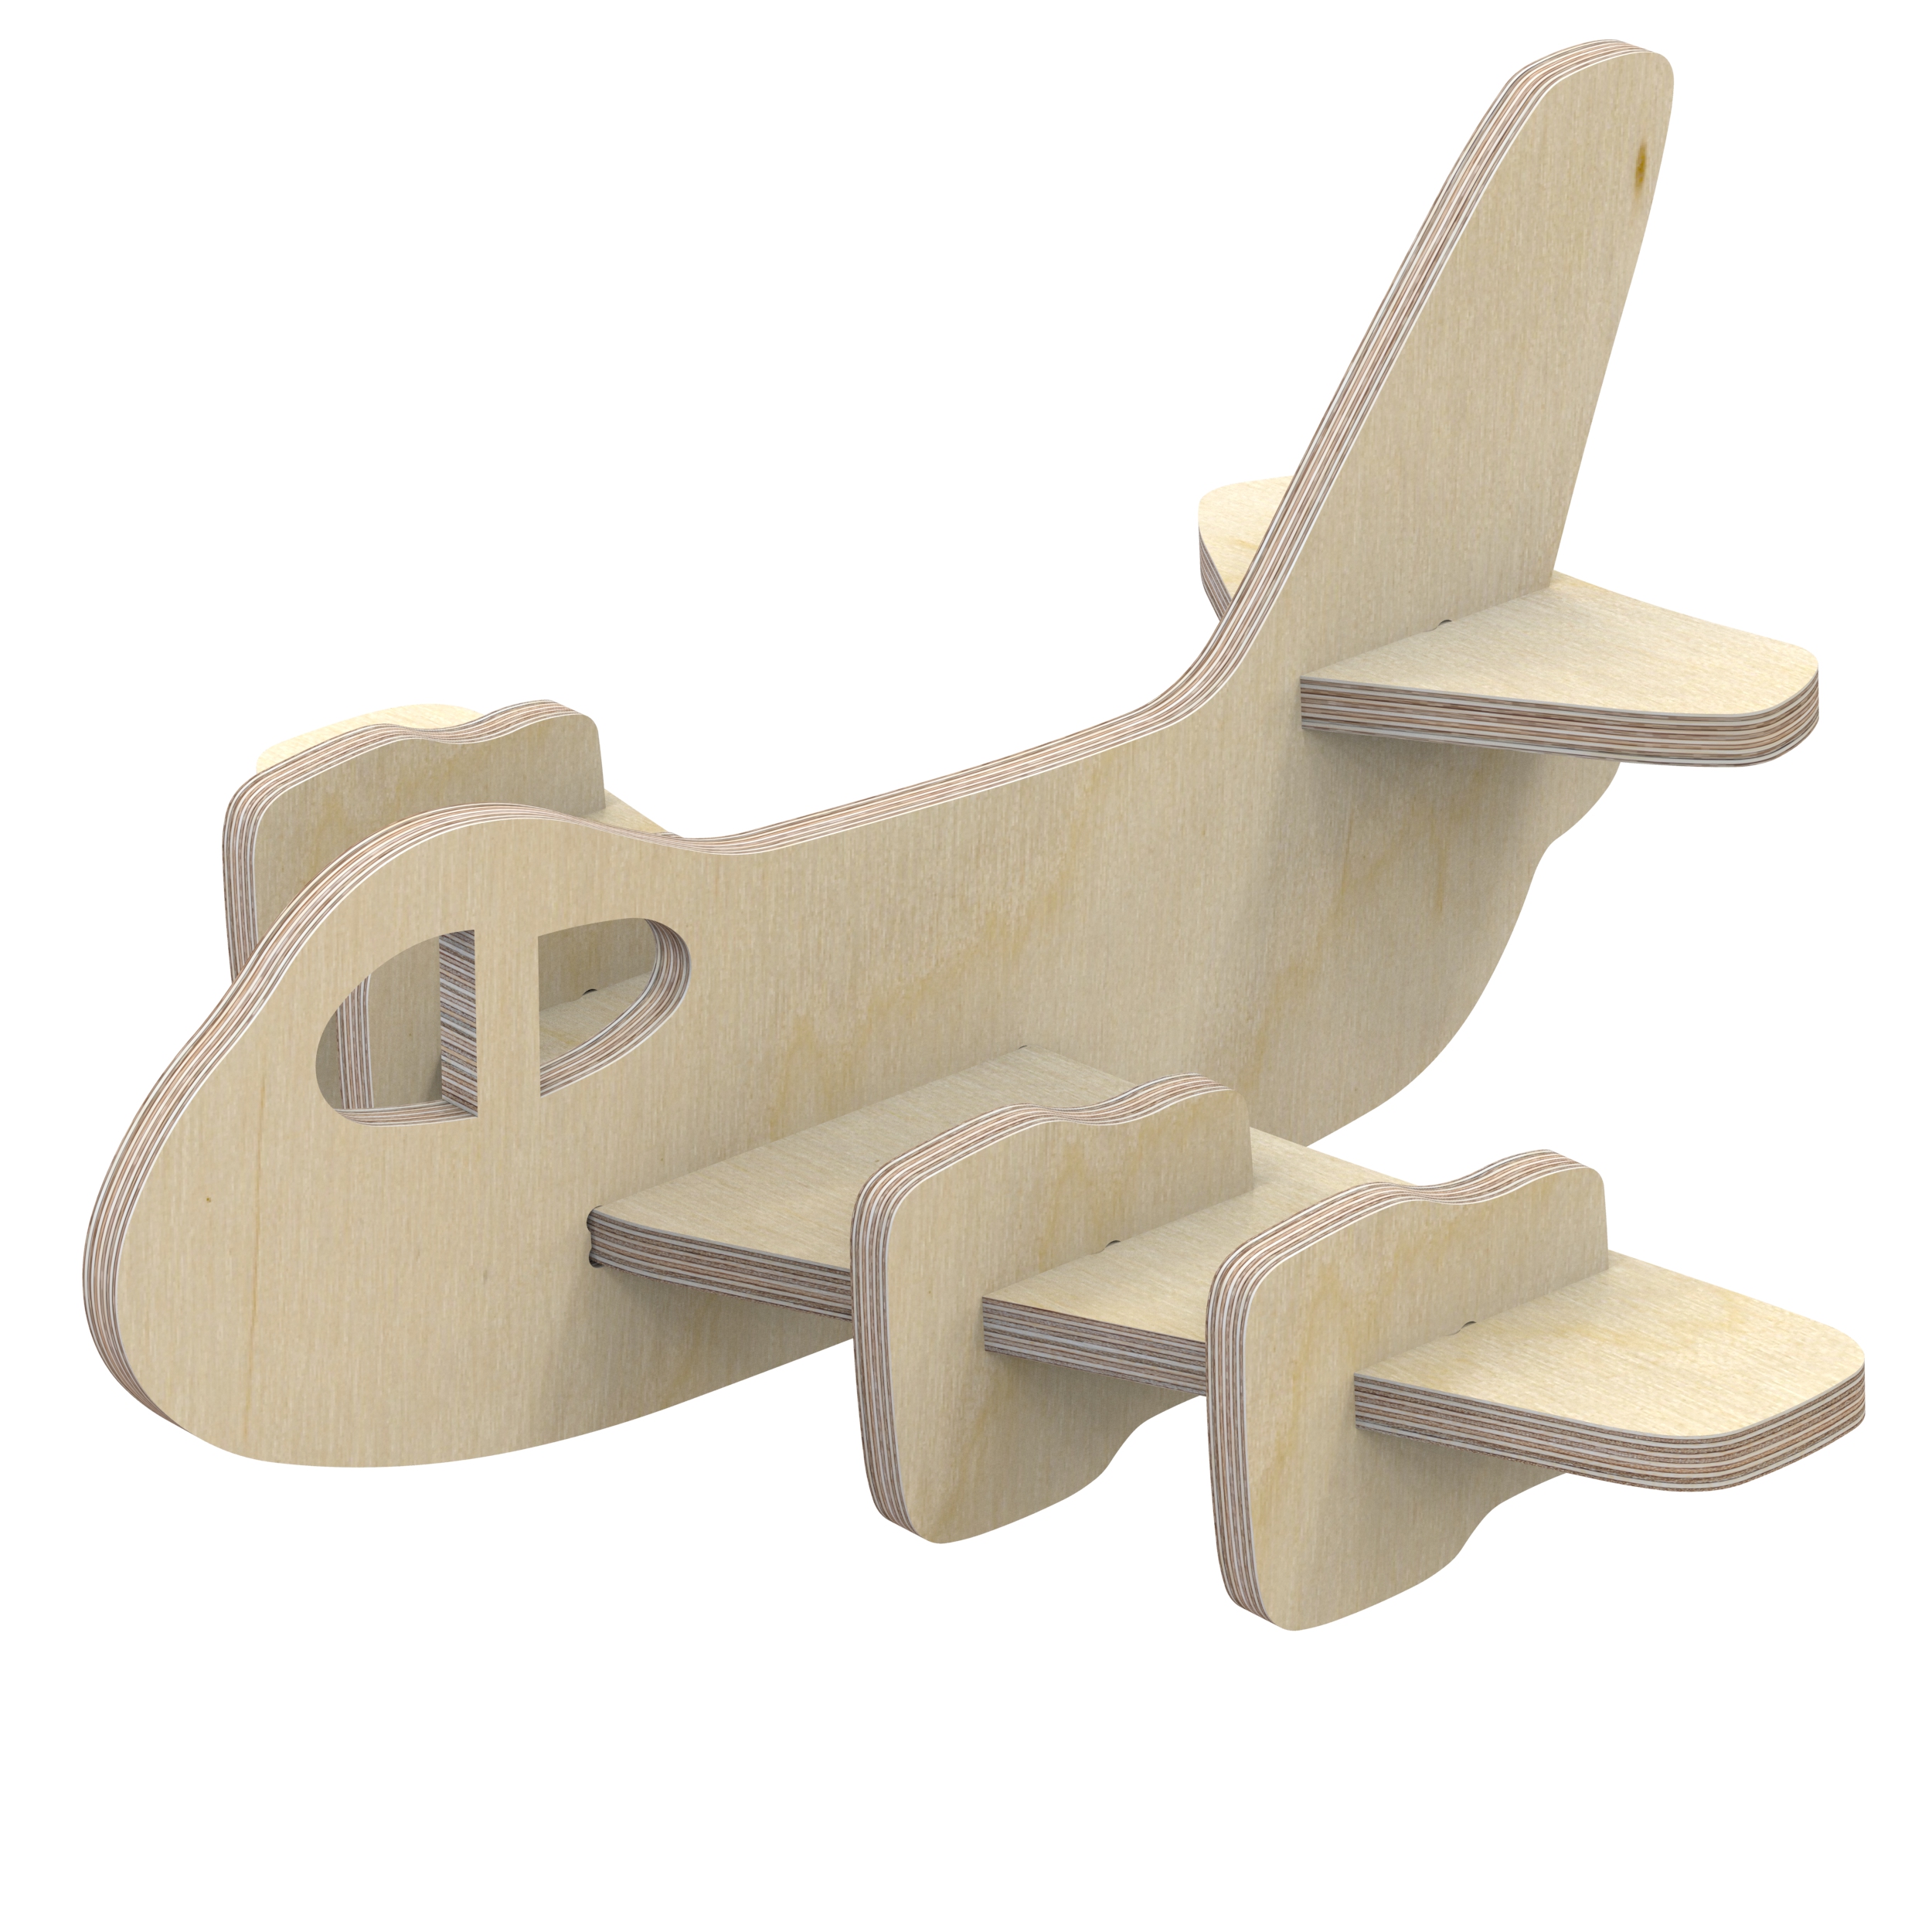 Flugzeug Kampfflugzeug Jet Holzbausatz 3D Holz Puzzle Holzpuzzle Modellbau NO:02 